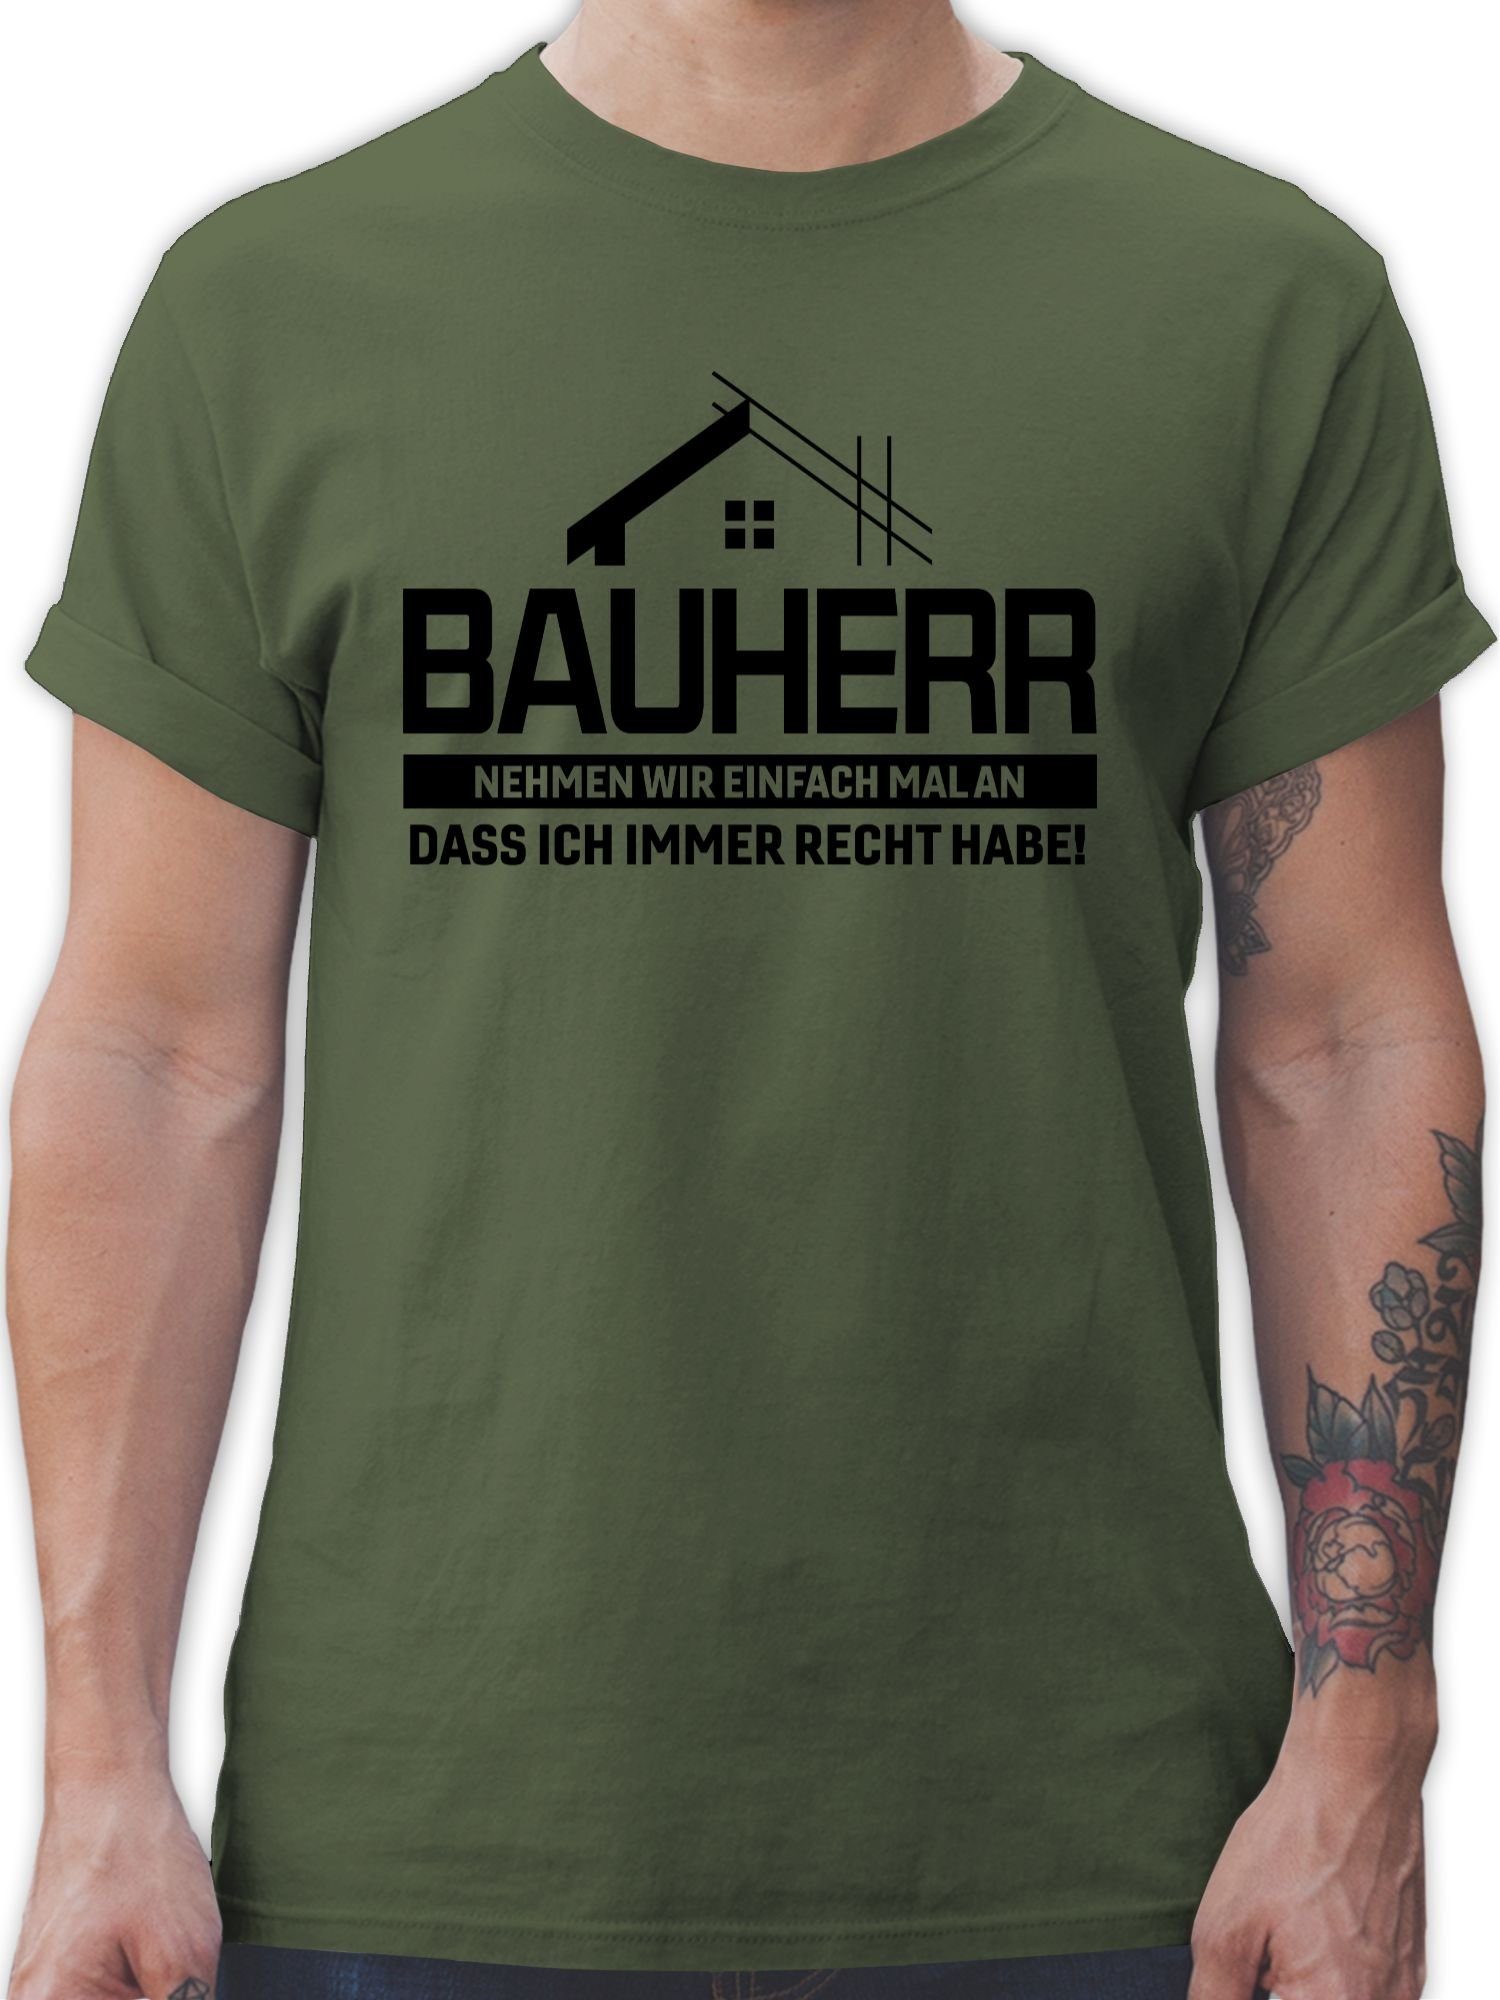 Shirtracer T-Shirt Bauherr Nehmen wir einfach ich dass Recht Army Grün mal schwarz habe an immer Handwerker Geschenke 03